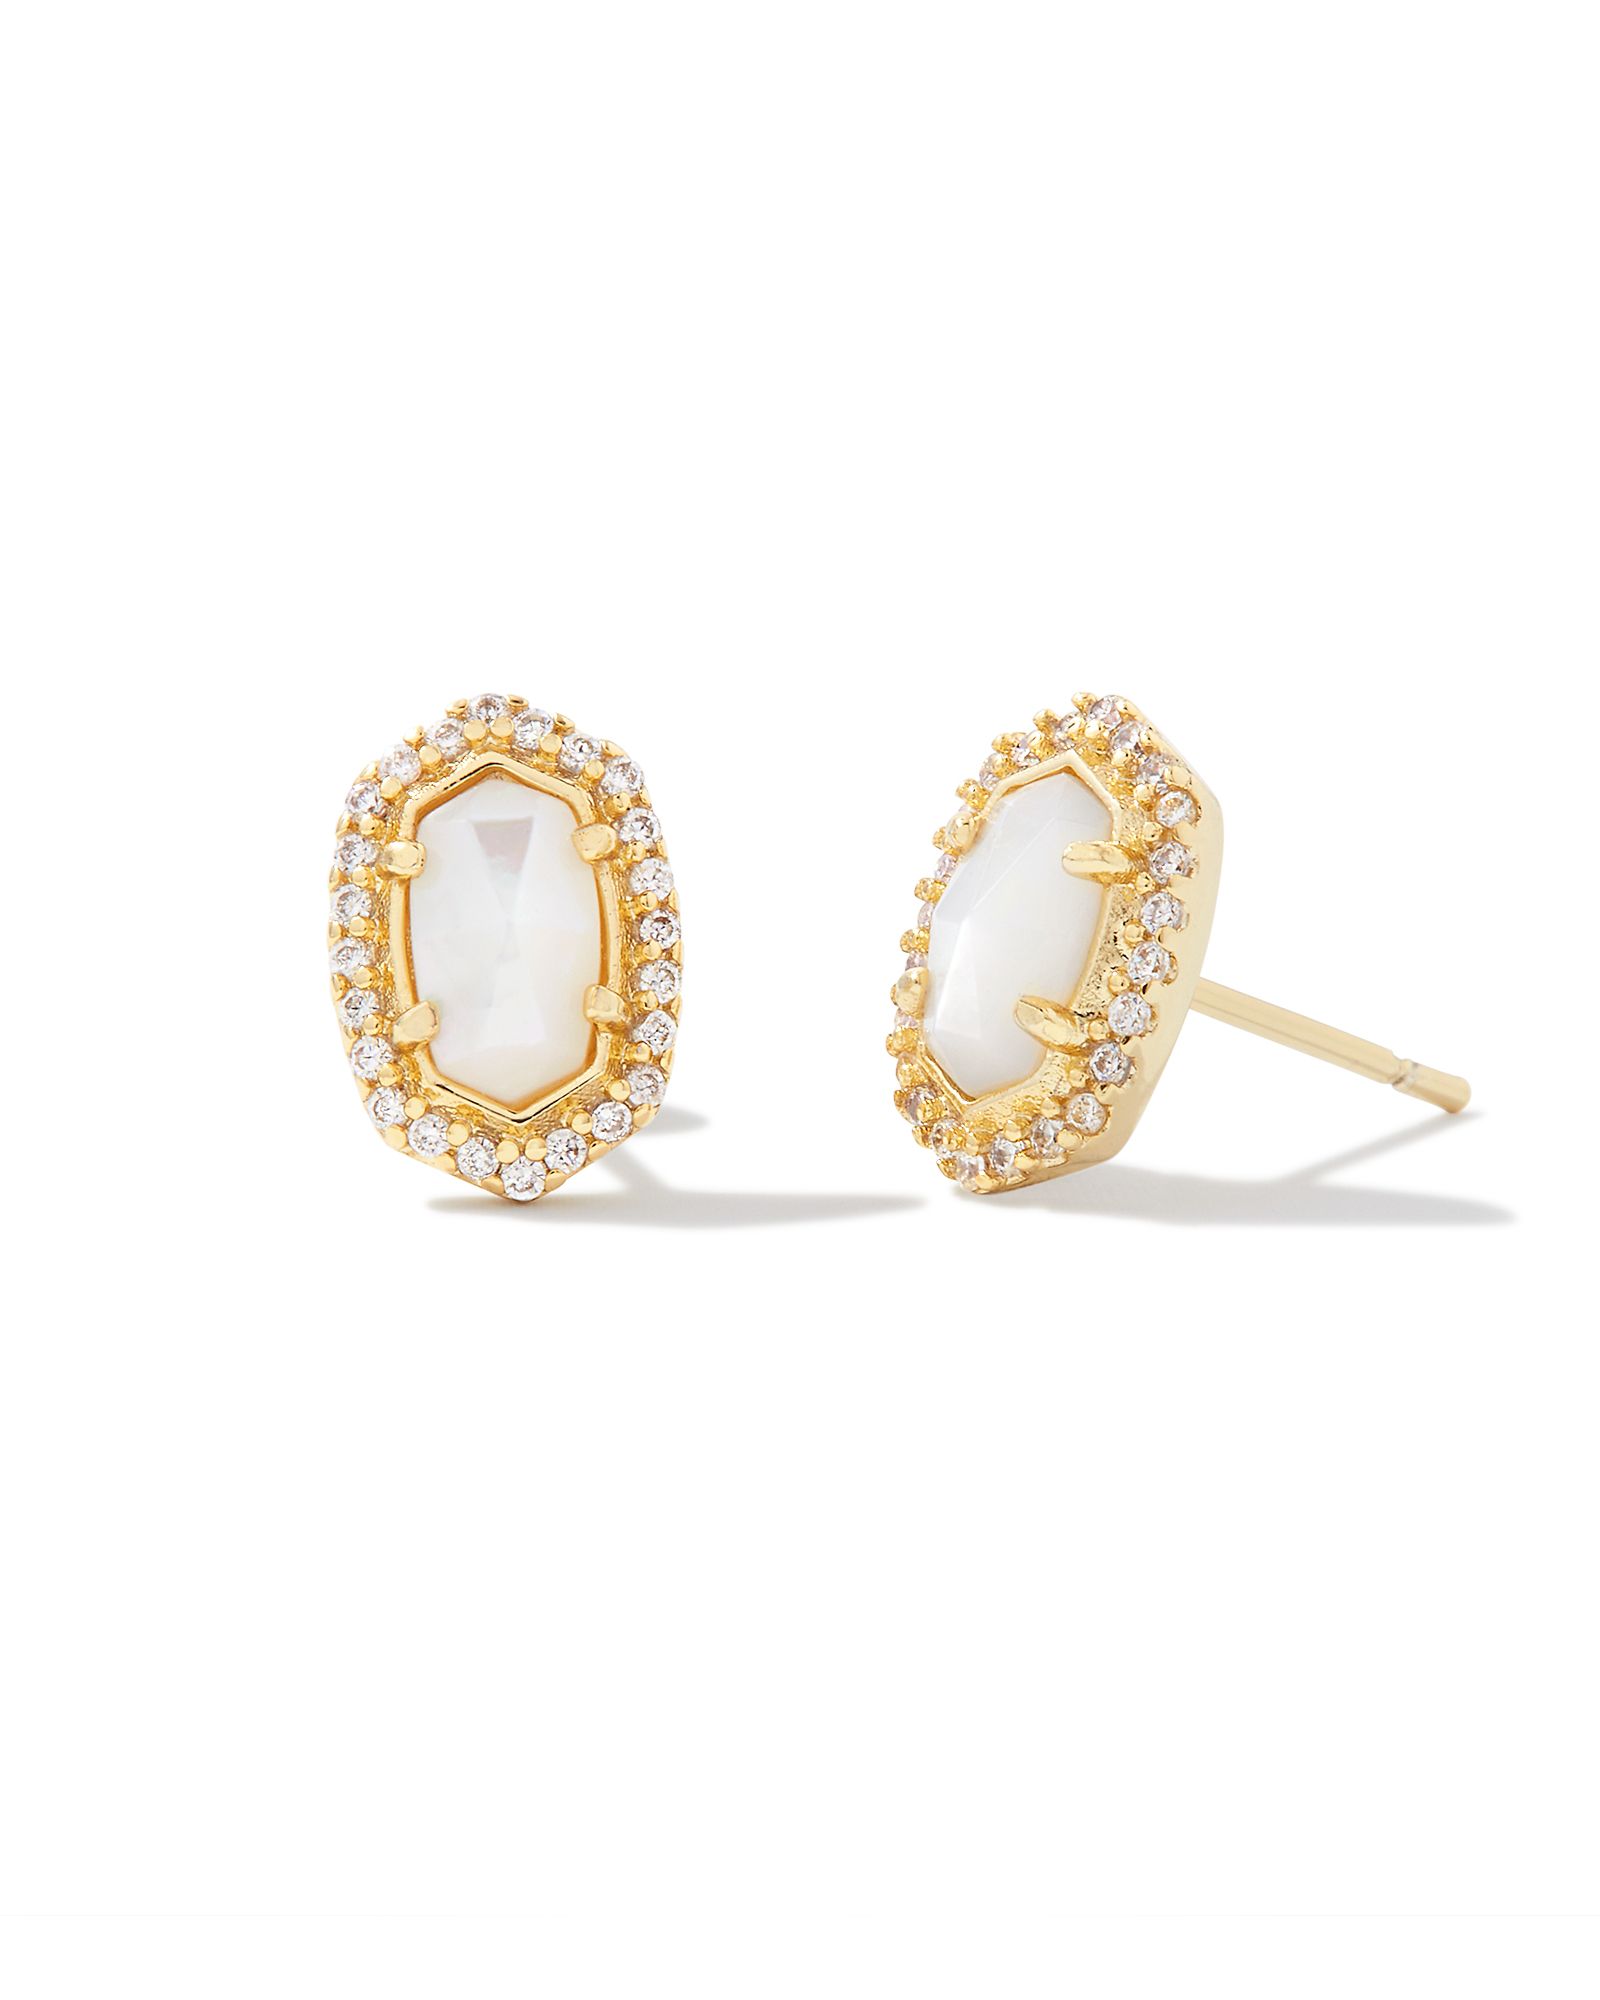 Cade Gold Stud Earrings in Ivory Mother-of-Pearl | Kendra Scott | Kendra Scott